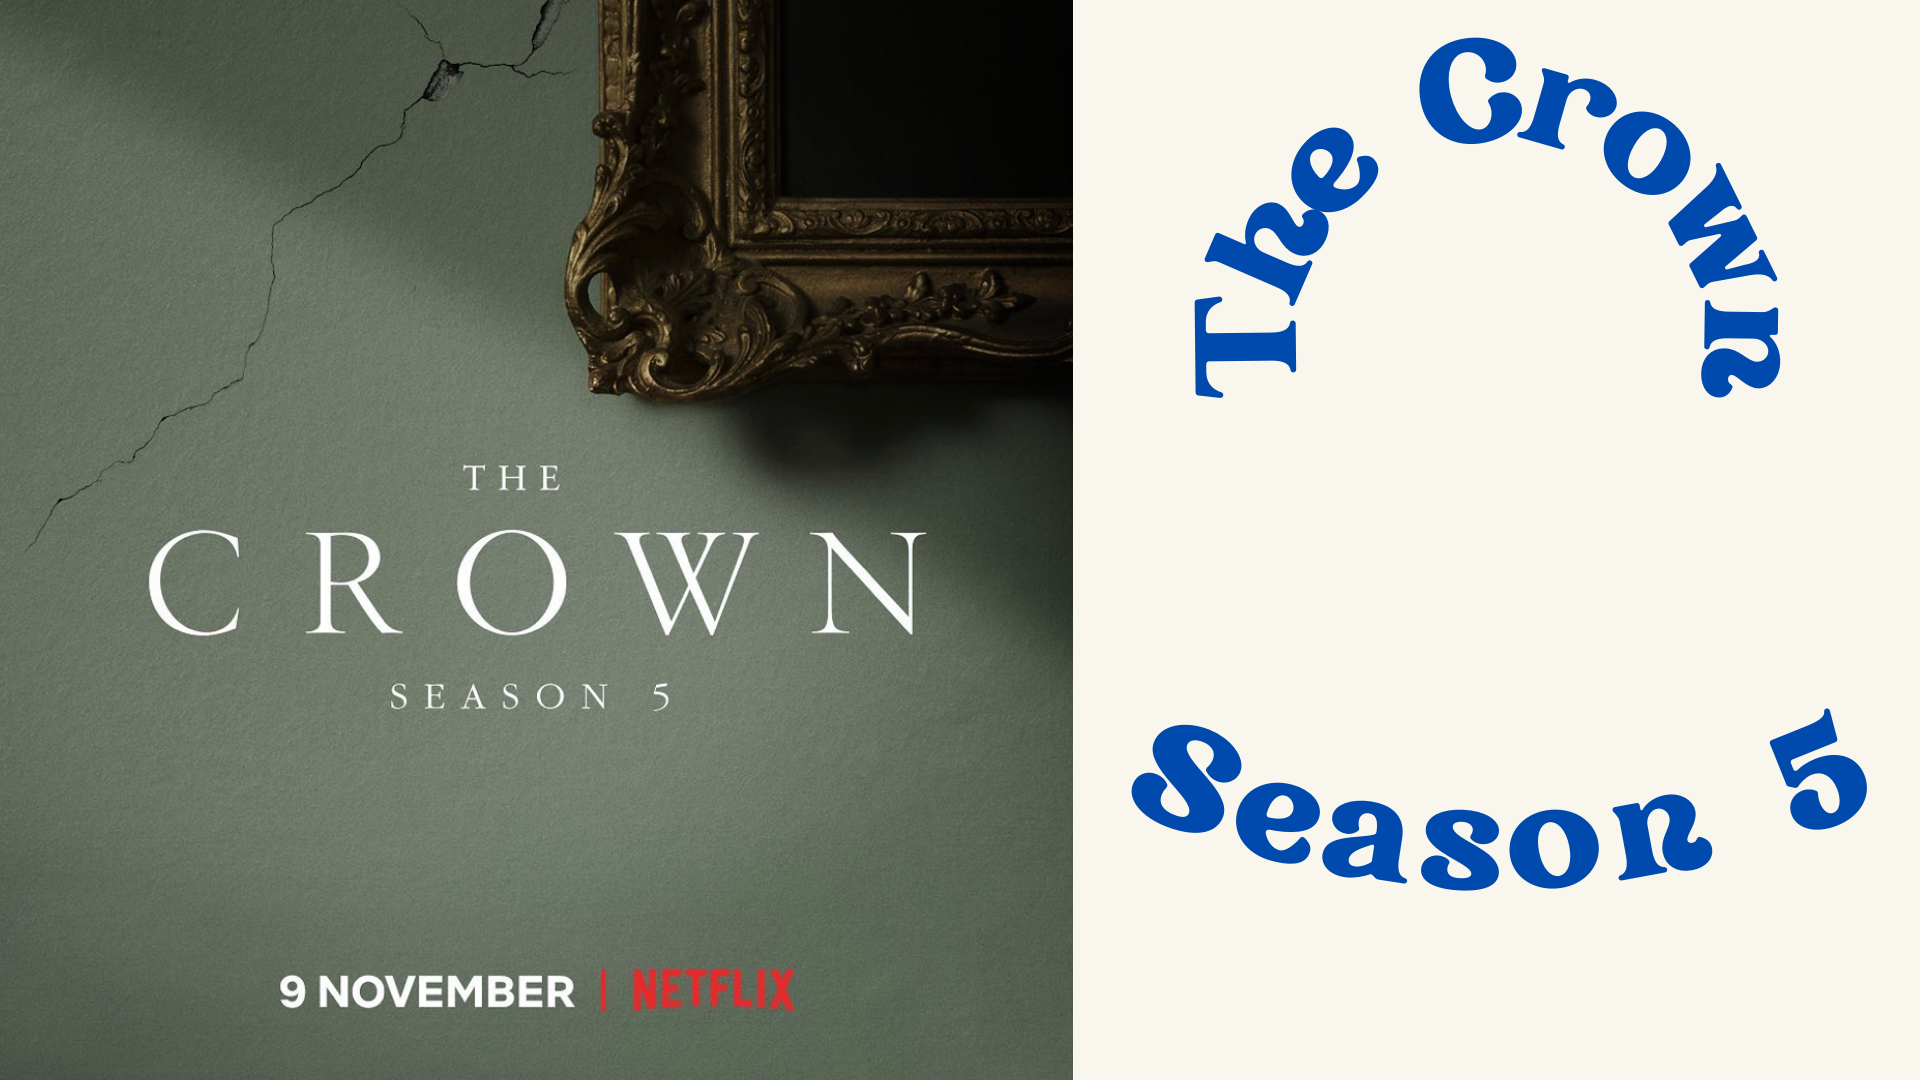 The crown Season 5